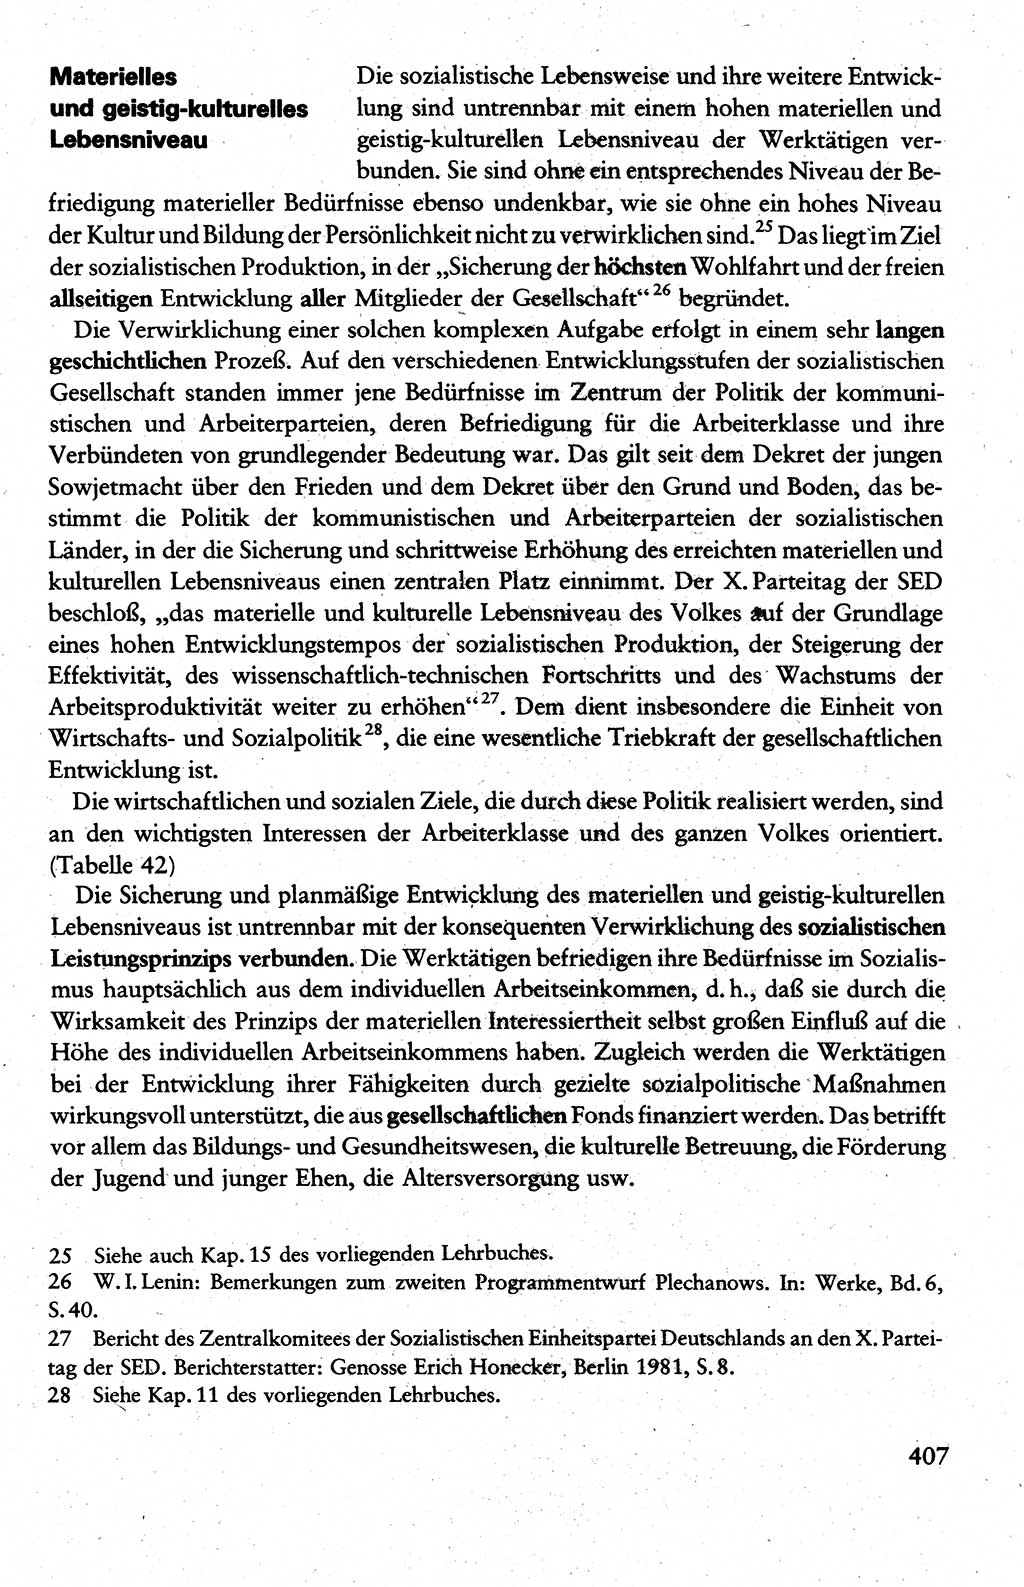 Wissenschaftlicher Kommunismus [Deutsche Demokratische Republik (DDR)], Lehrbuch für das marxistisch-leninistische Grundlagenstudium 1983, Seite 407 (Wiss. Komm. DDR Lb. 1983, S. 407)